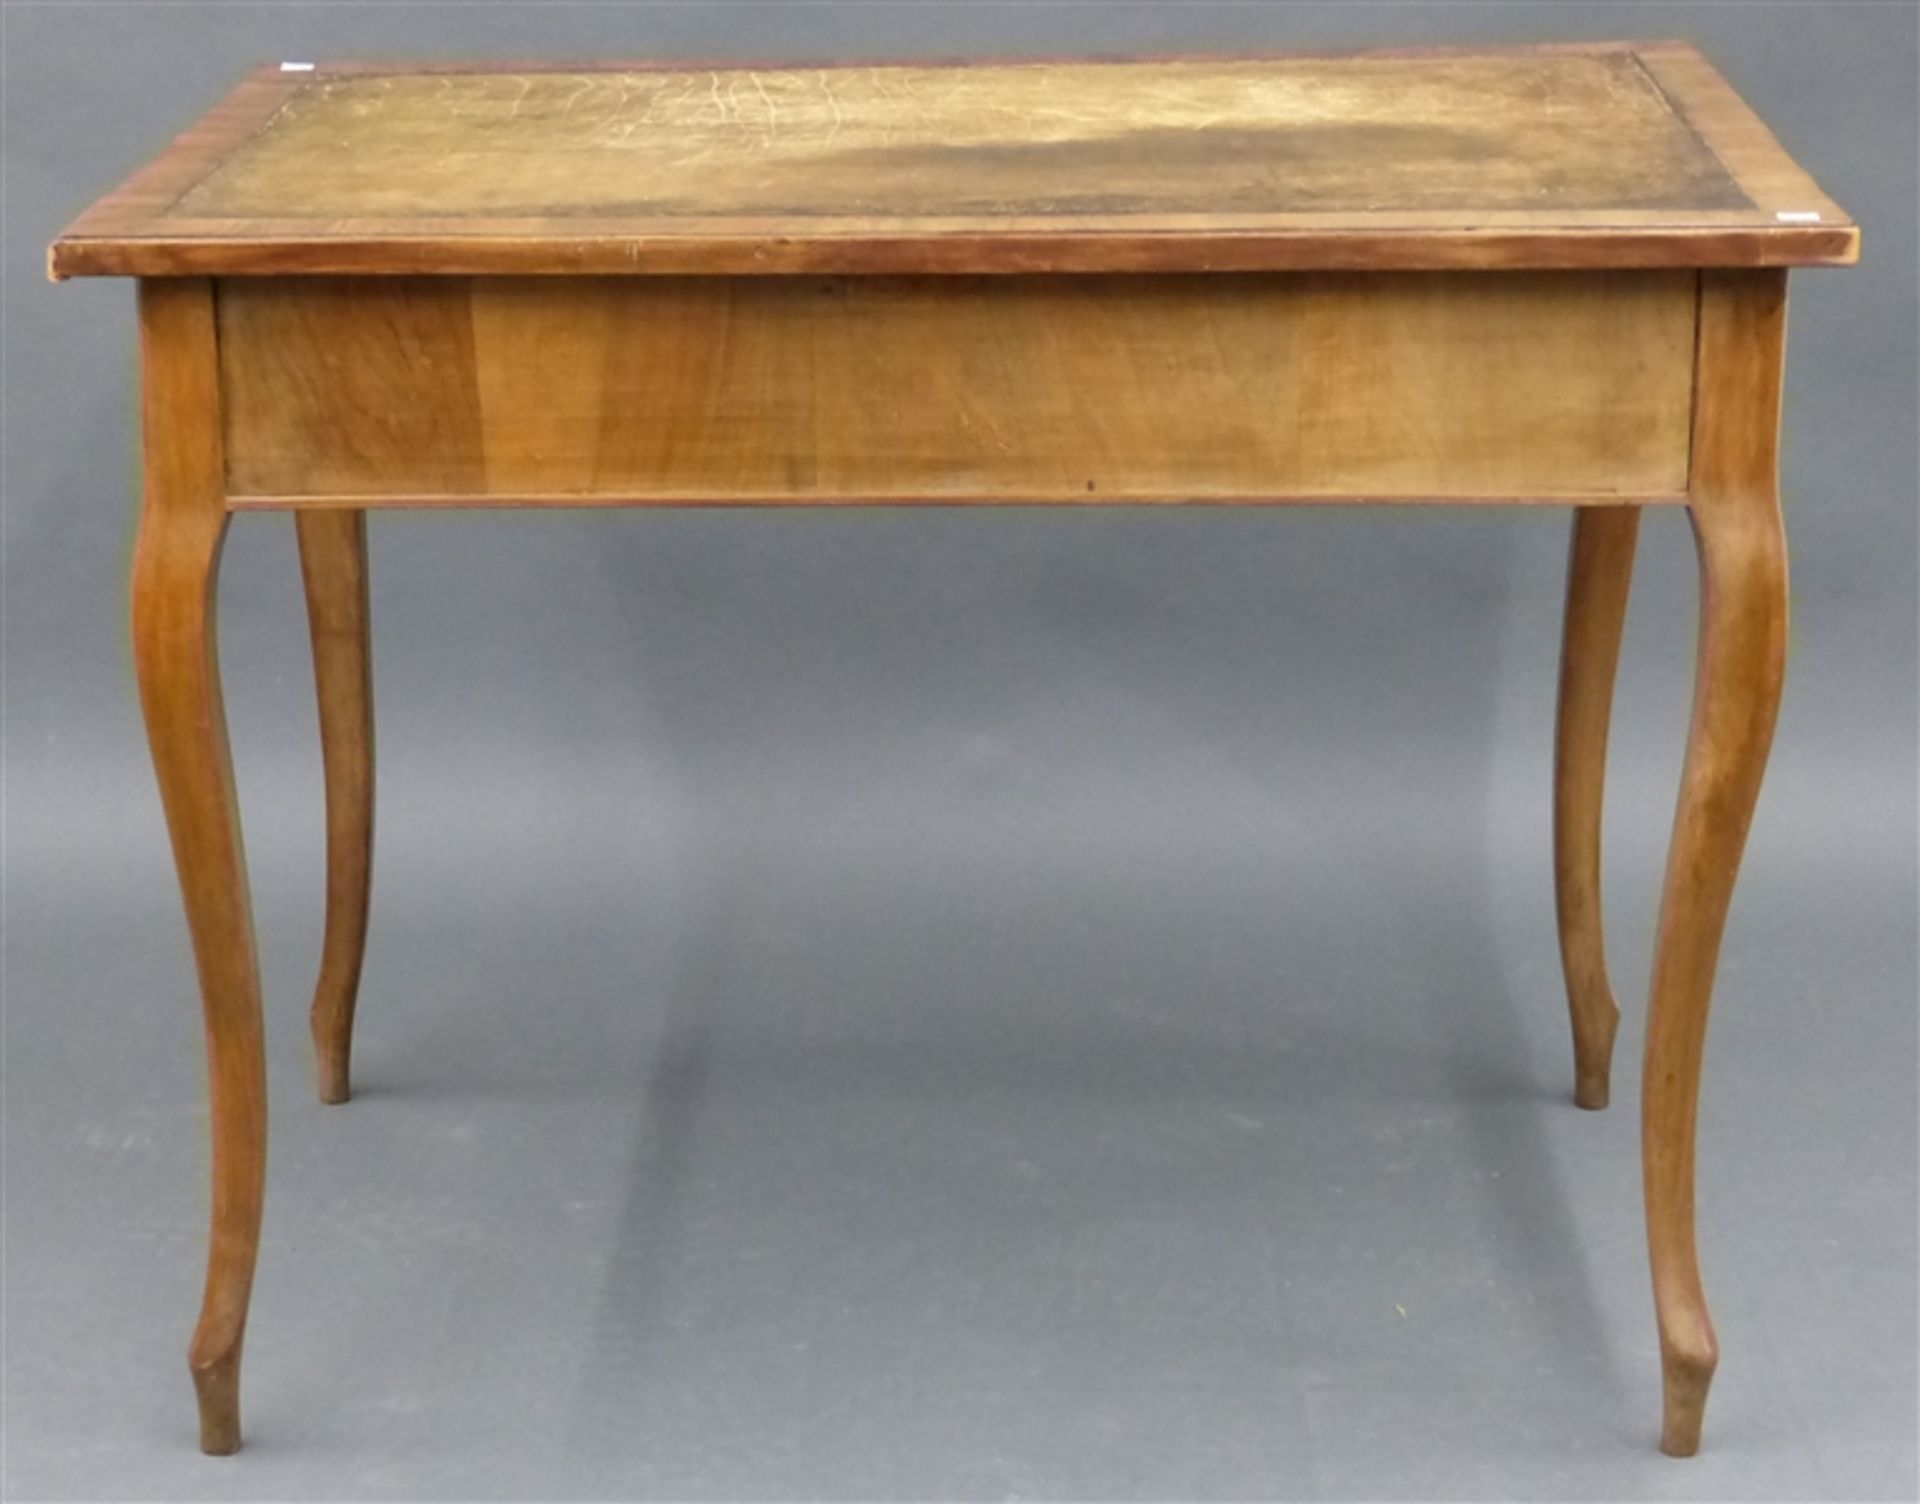 Schreibtisch, um 1900 England, Mahagoni, Ledereinlage, einschübig, Gebrauchsspuren, h 80 cm, b 103